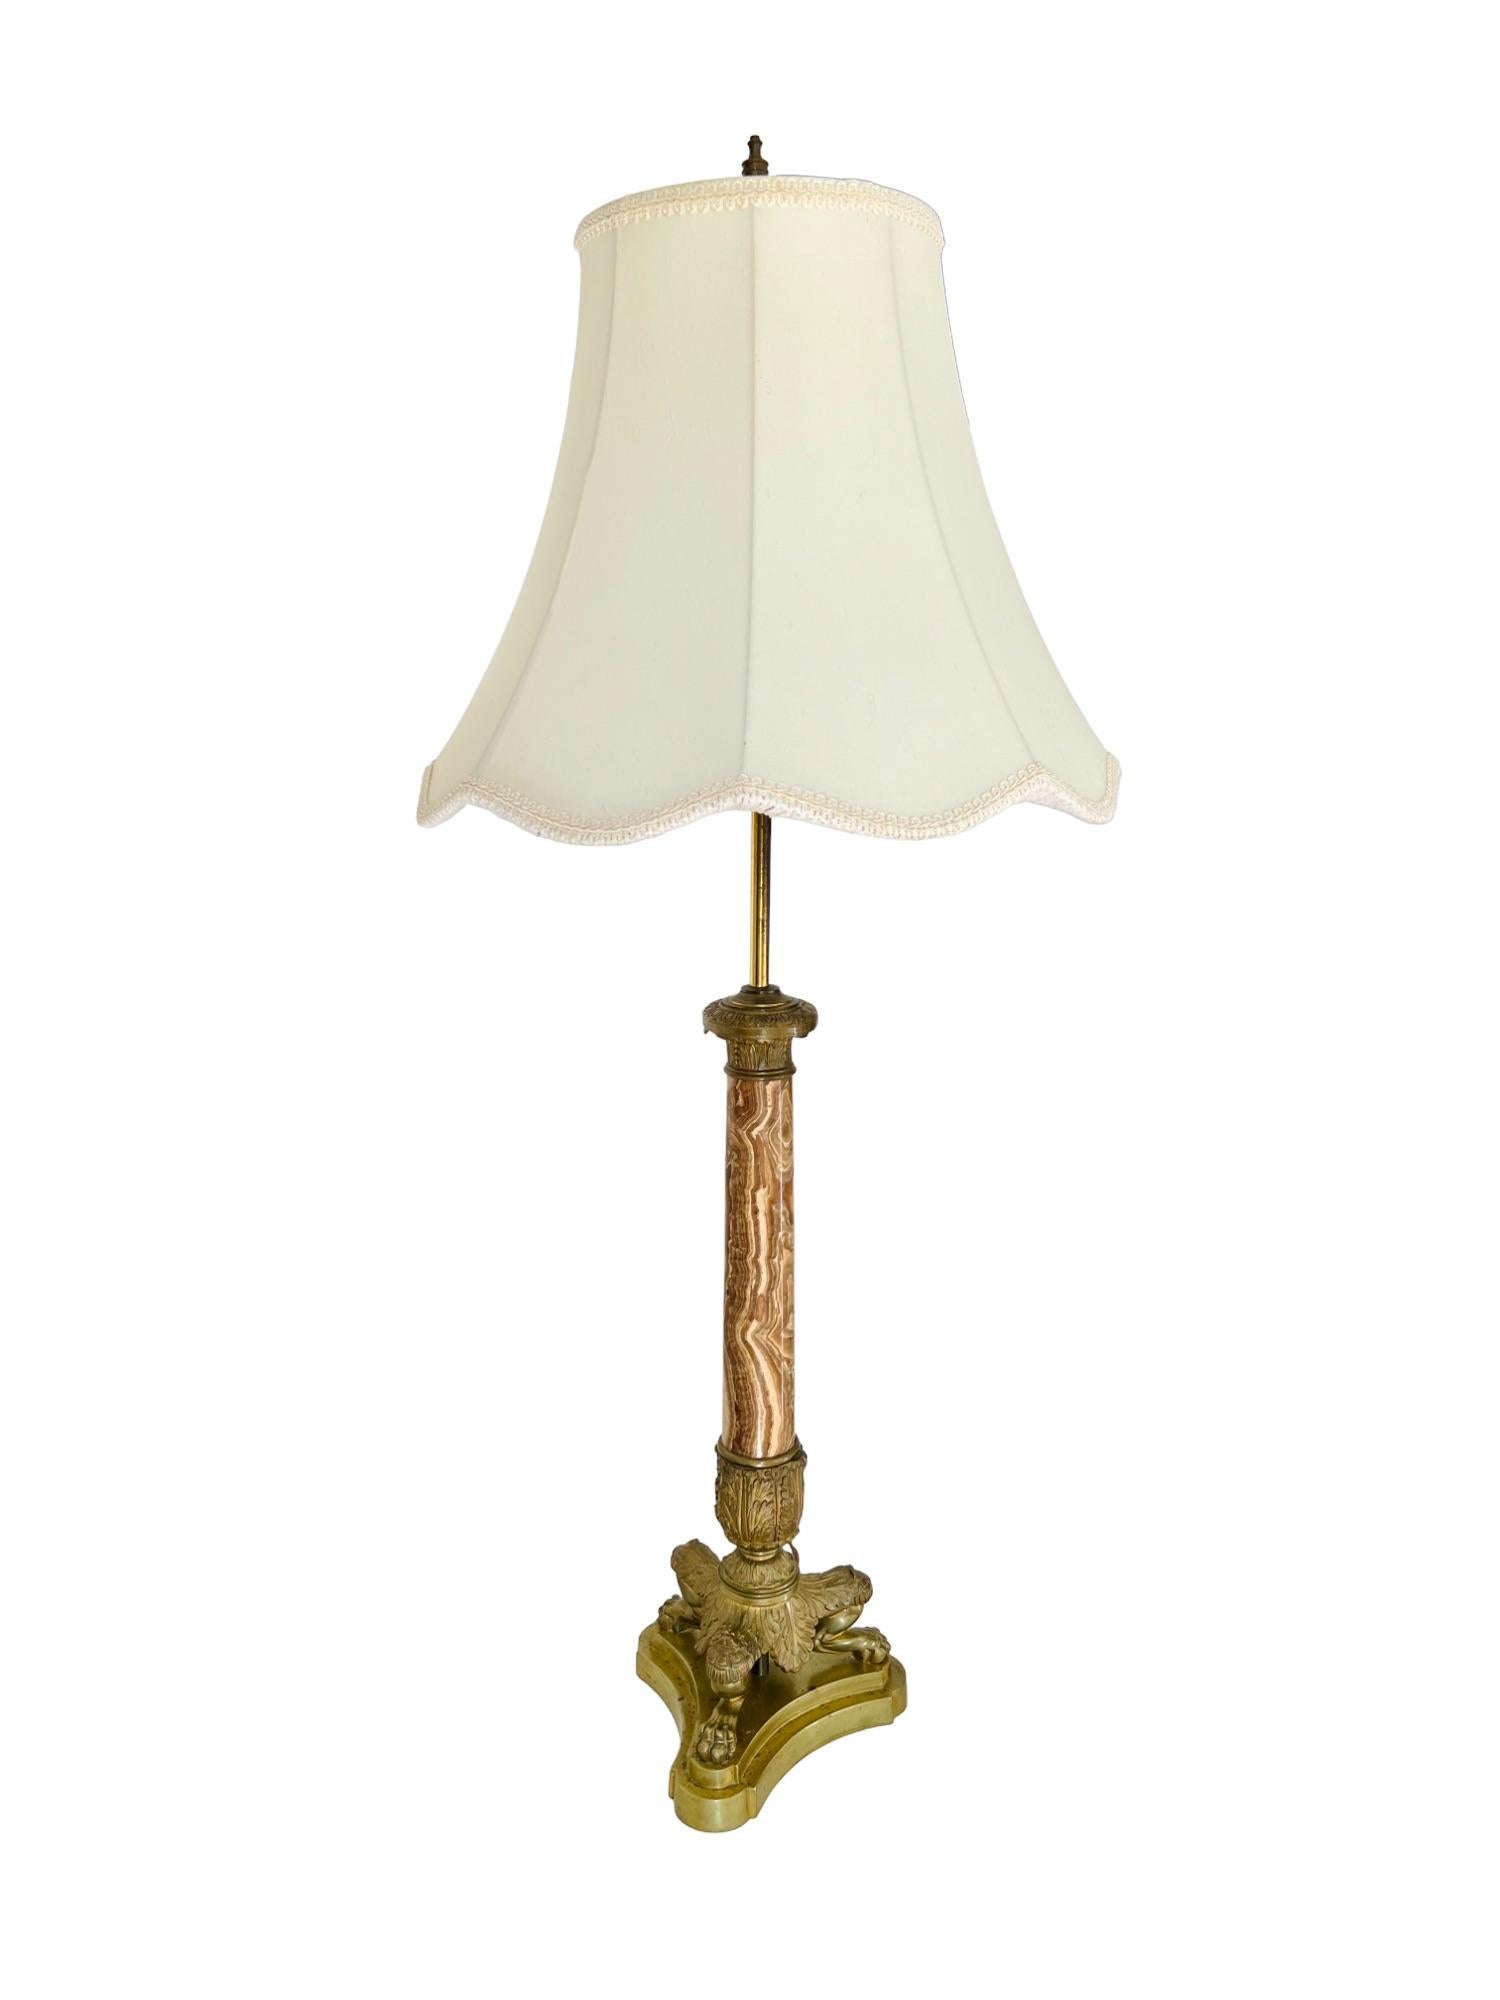 Französische Empire-Tischlampe aus dem 19. Jahrhundert (umgewandelt) mit zwei Lampen und Schirm. Neoklassizistisches Design mit einem sich verjüngenden Onyxschaft, der mit dekorativen Messingbeschlägen verziert ist und von einem dreiförmigen Sockel